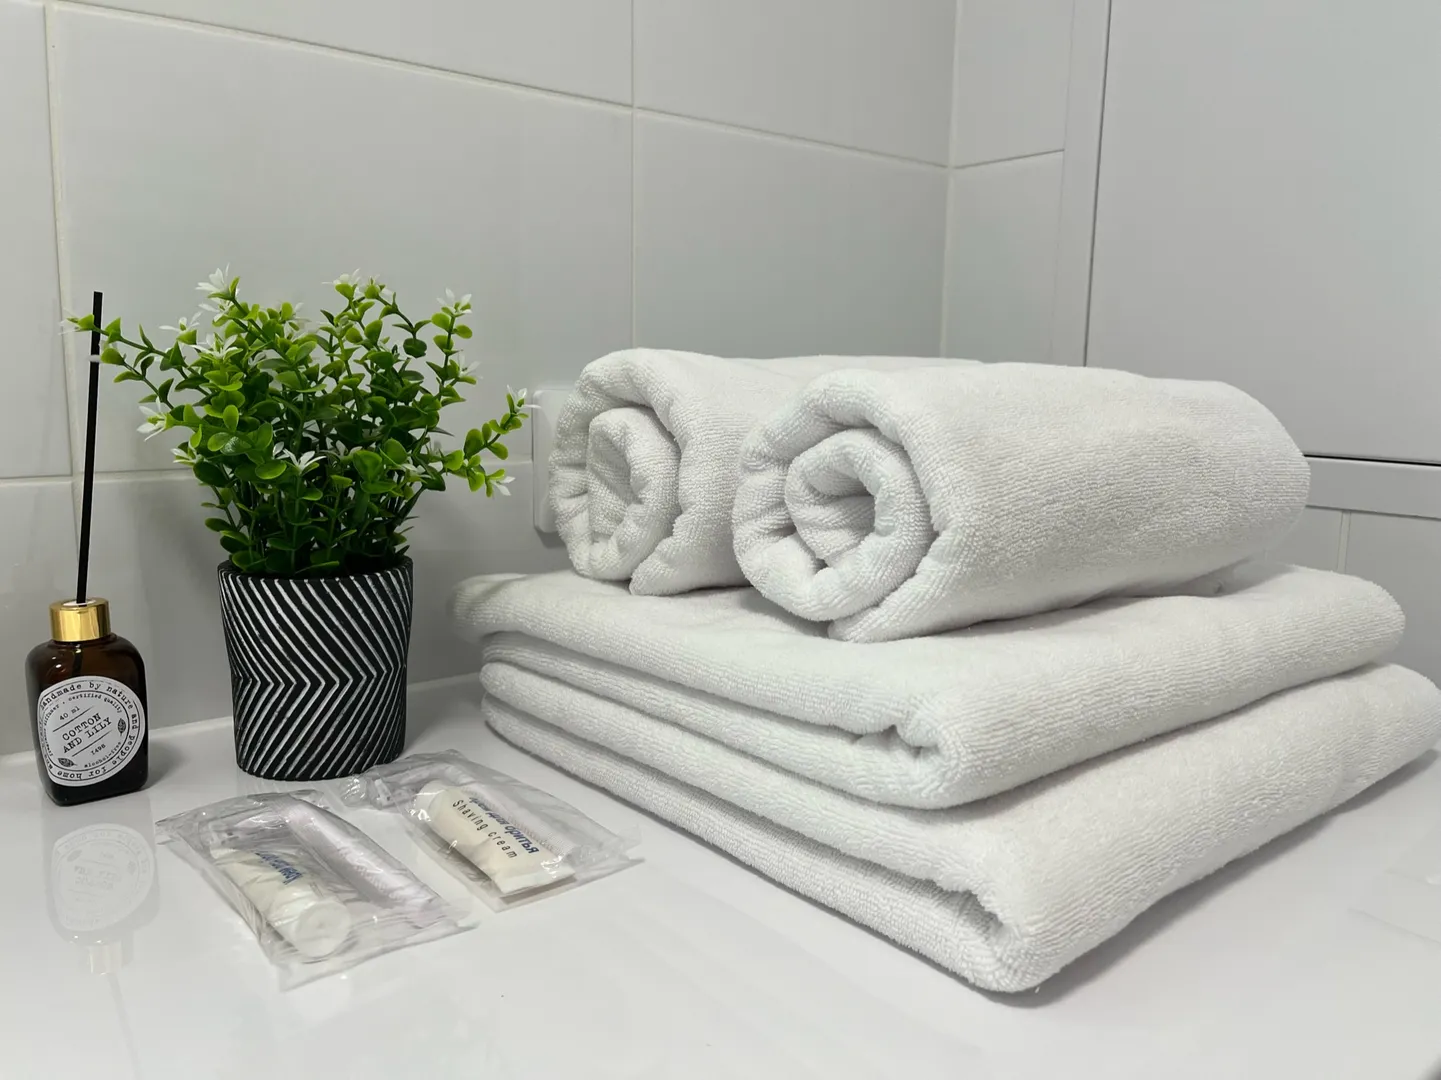 Белоснежные полотенца, бритвенный набор, зубной набор предоставляем для своих гостей без исключения